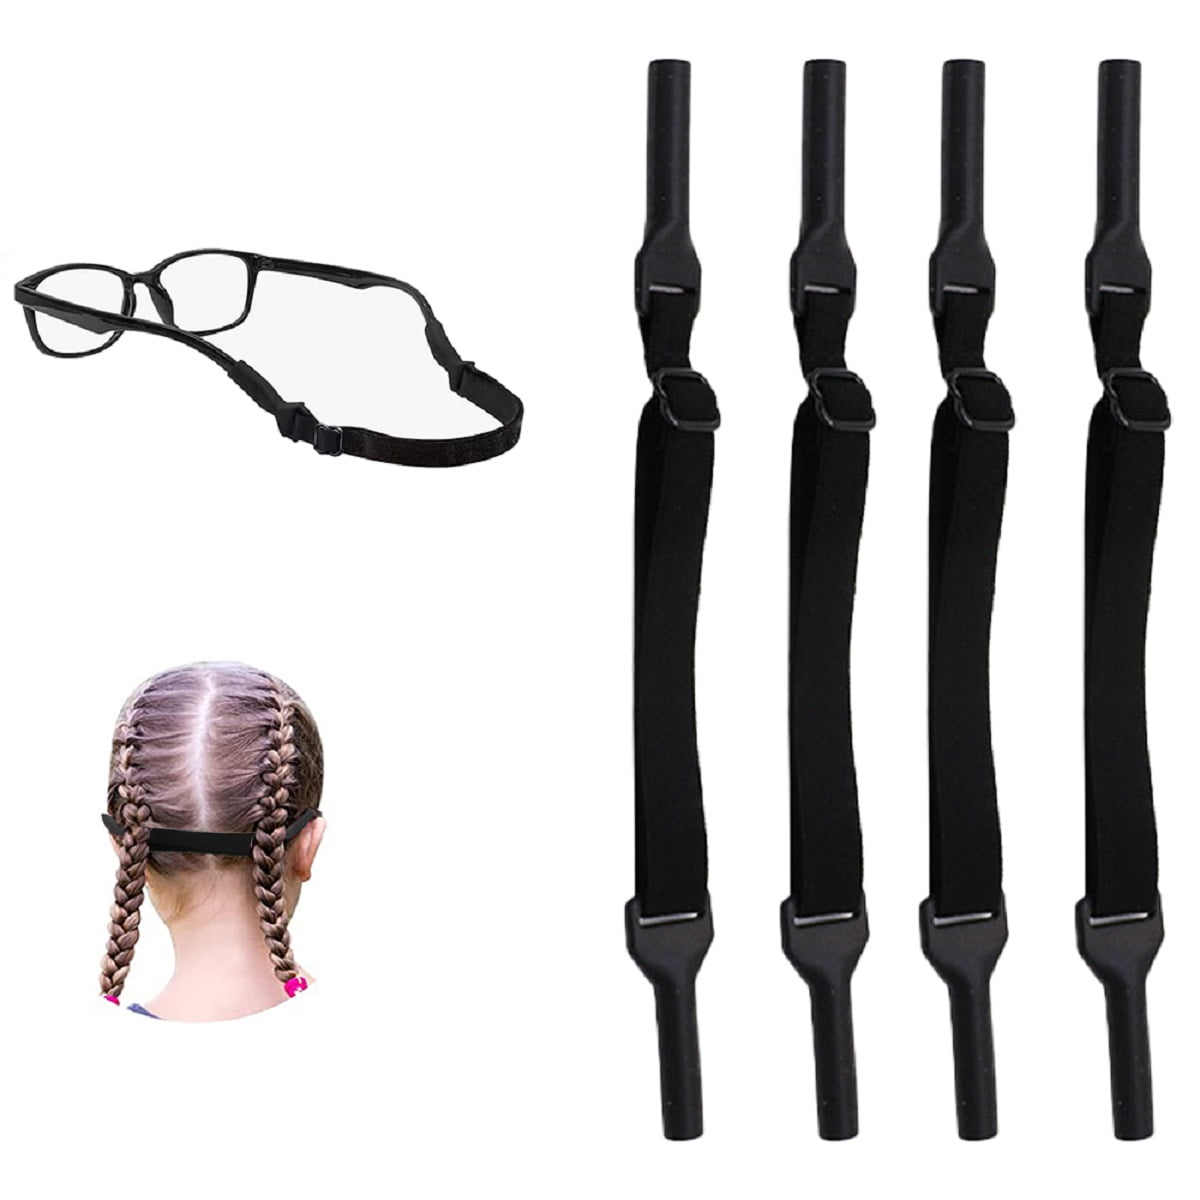 Sunjoy Tech Glasses Strap, Eye Glasses String Holder, Sports Sunglasses  Strap for Men Women, Eyeglass Holders Around Neck, Rope Eyewear Retainer,  Pack